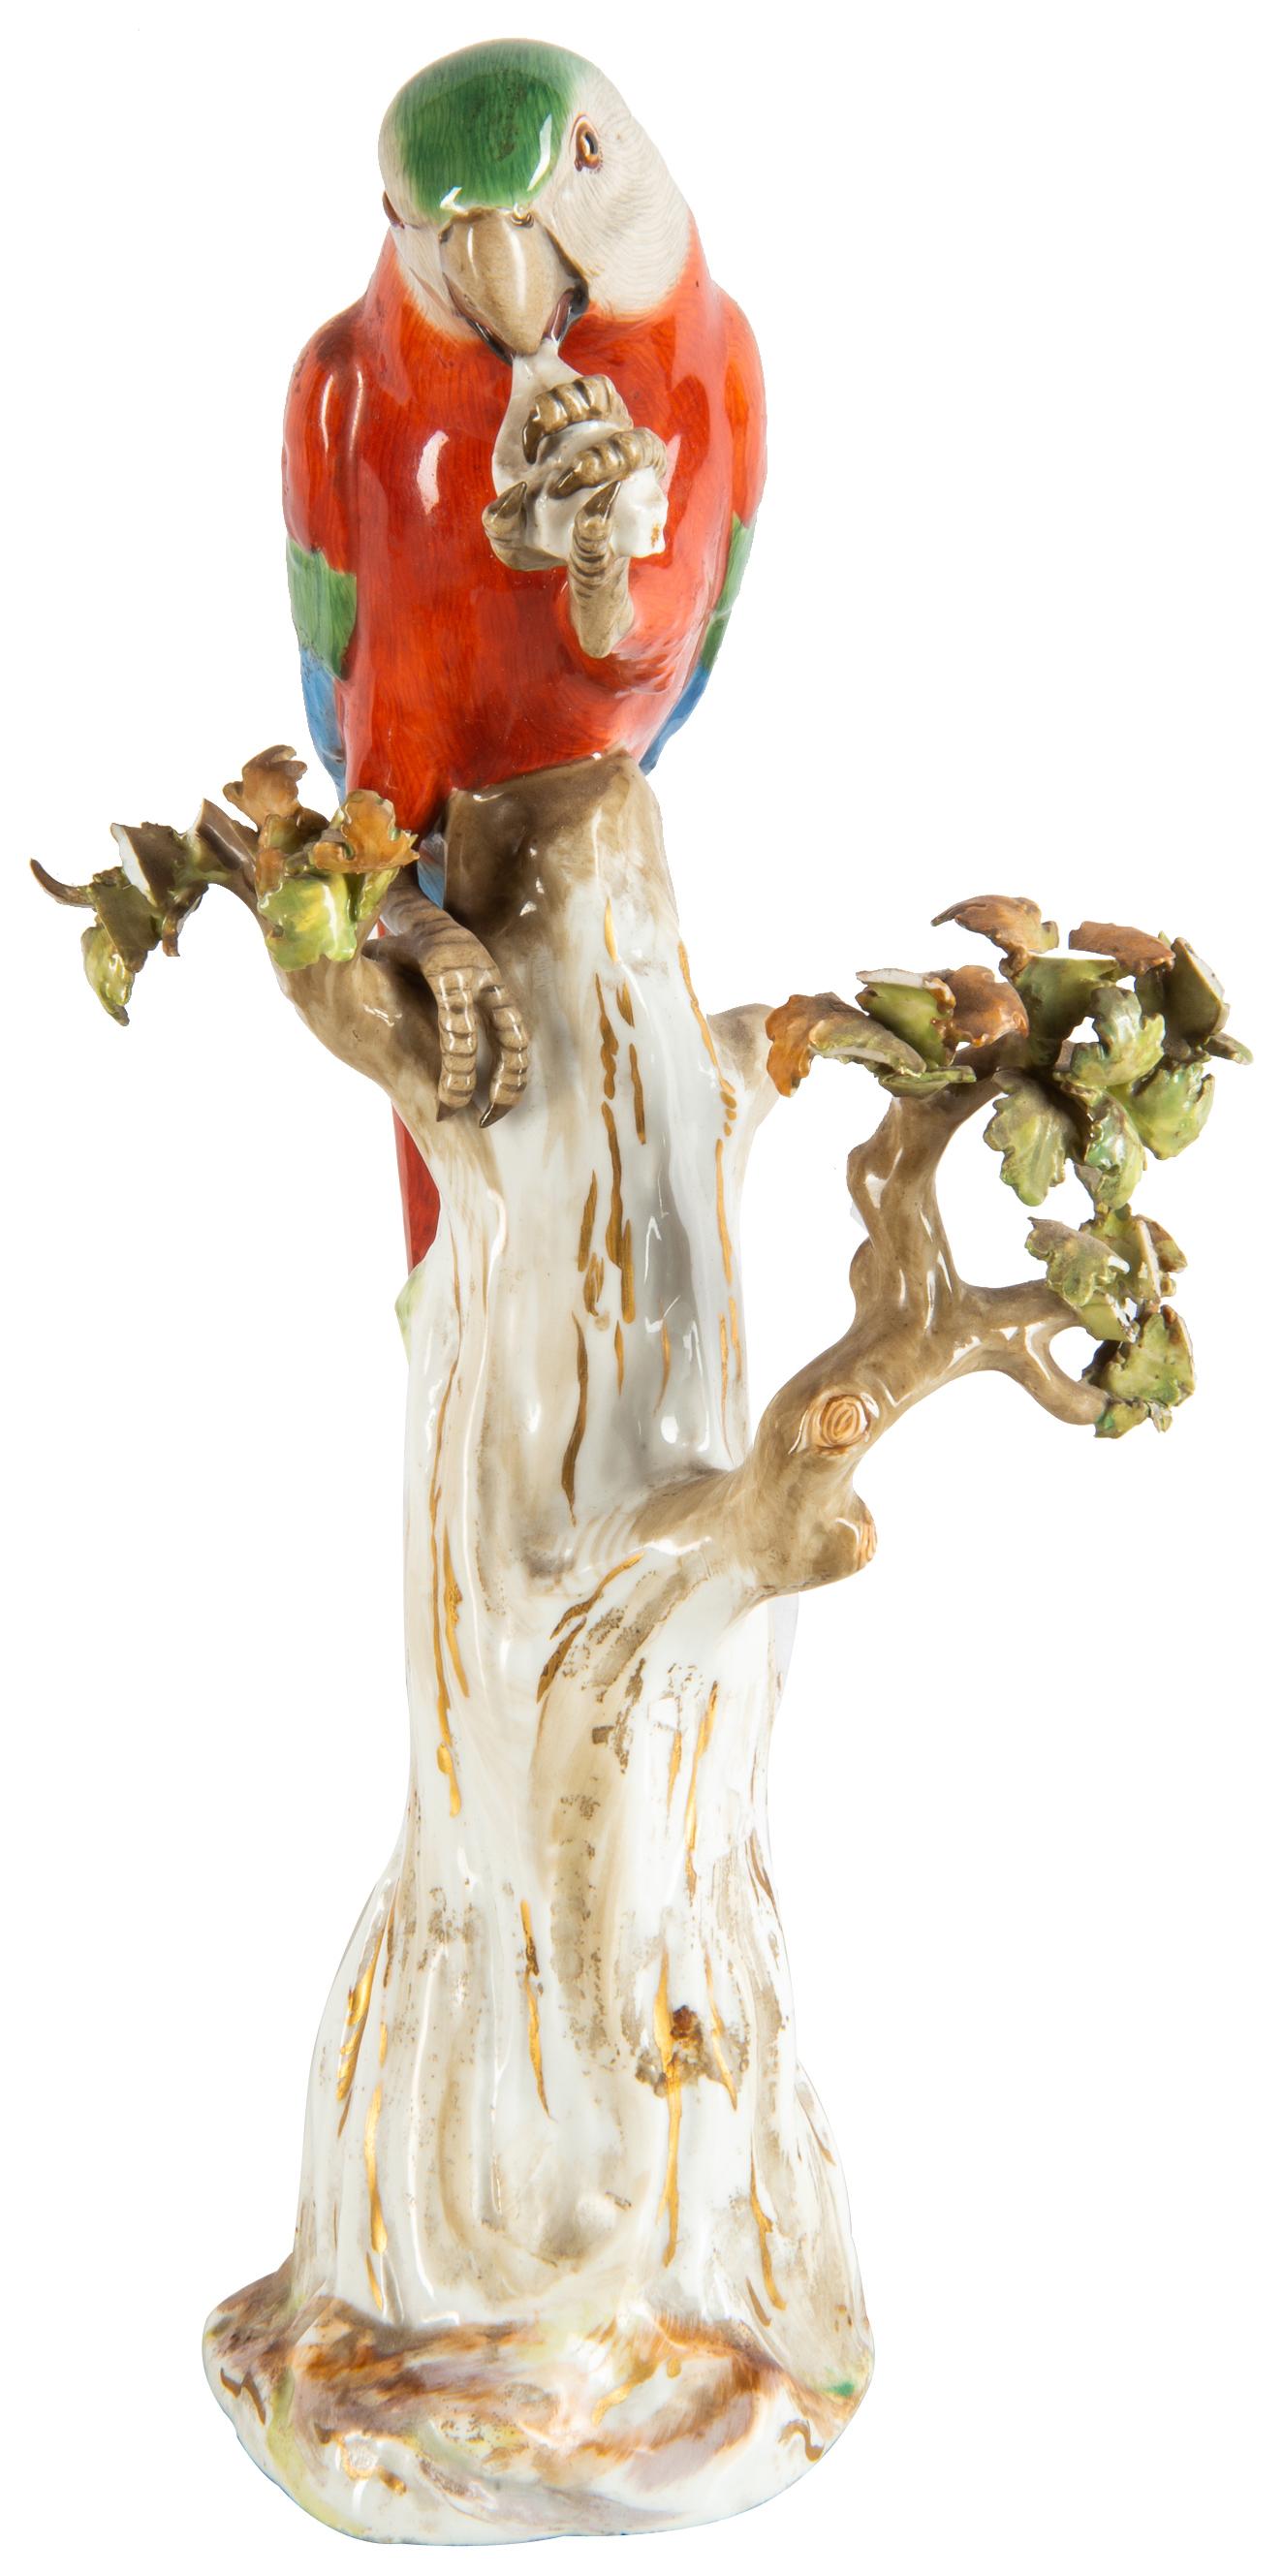 Perroquet en porcelaine de Meissen de bonne qualité:: datant de la fin du XIXe siècle:: perché sur une souche d'arbre et se nourrissant. 
Épées croisées bleues à la base.